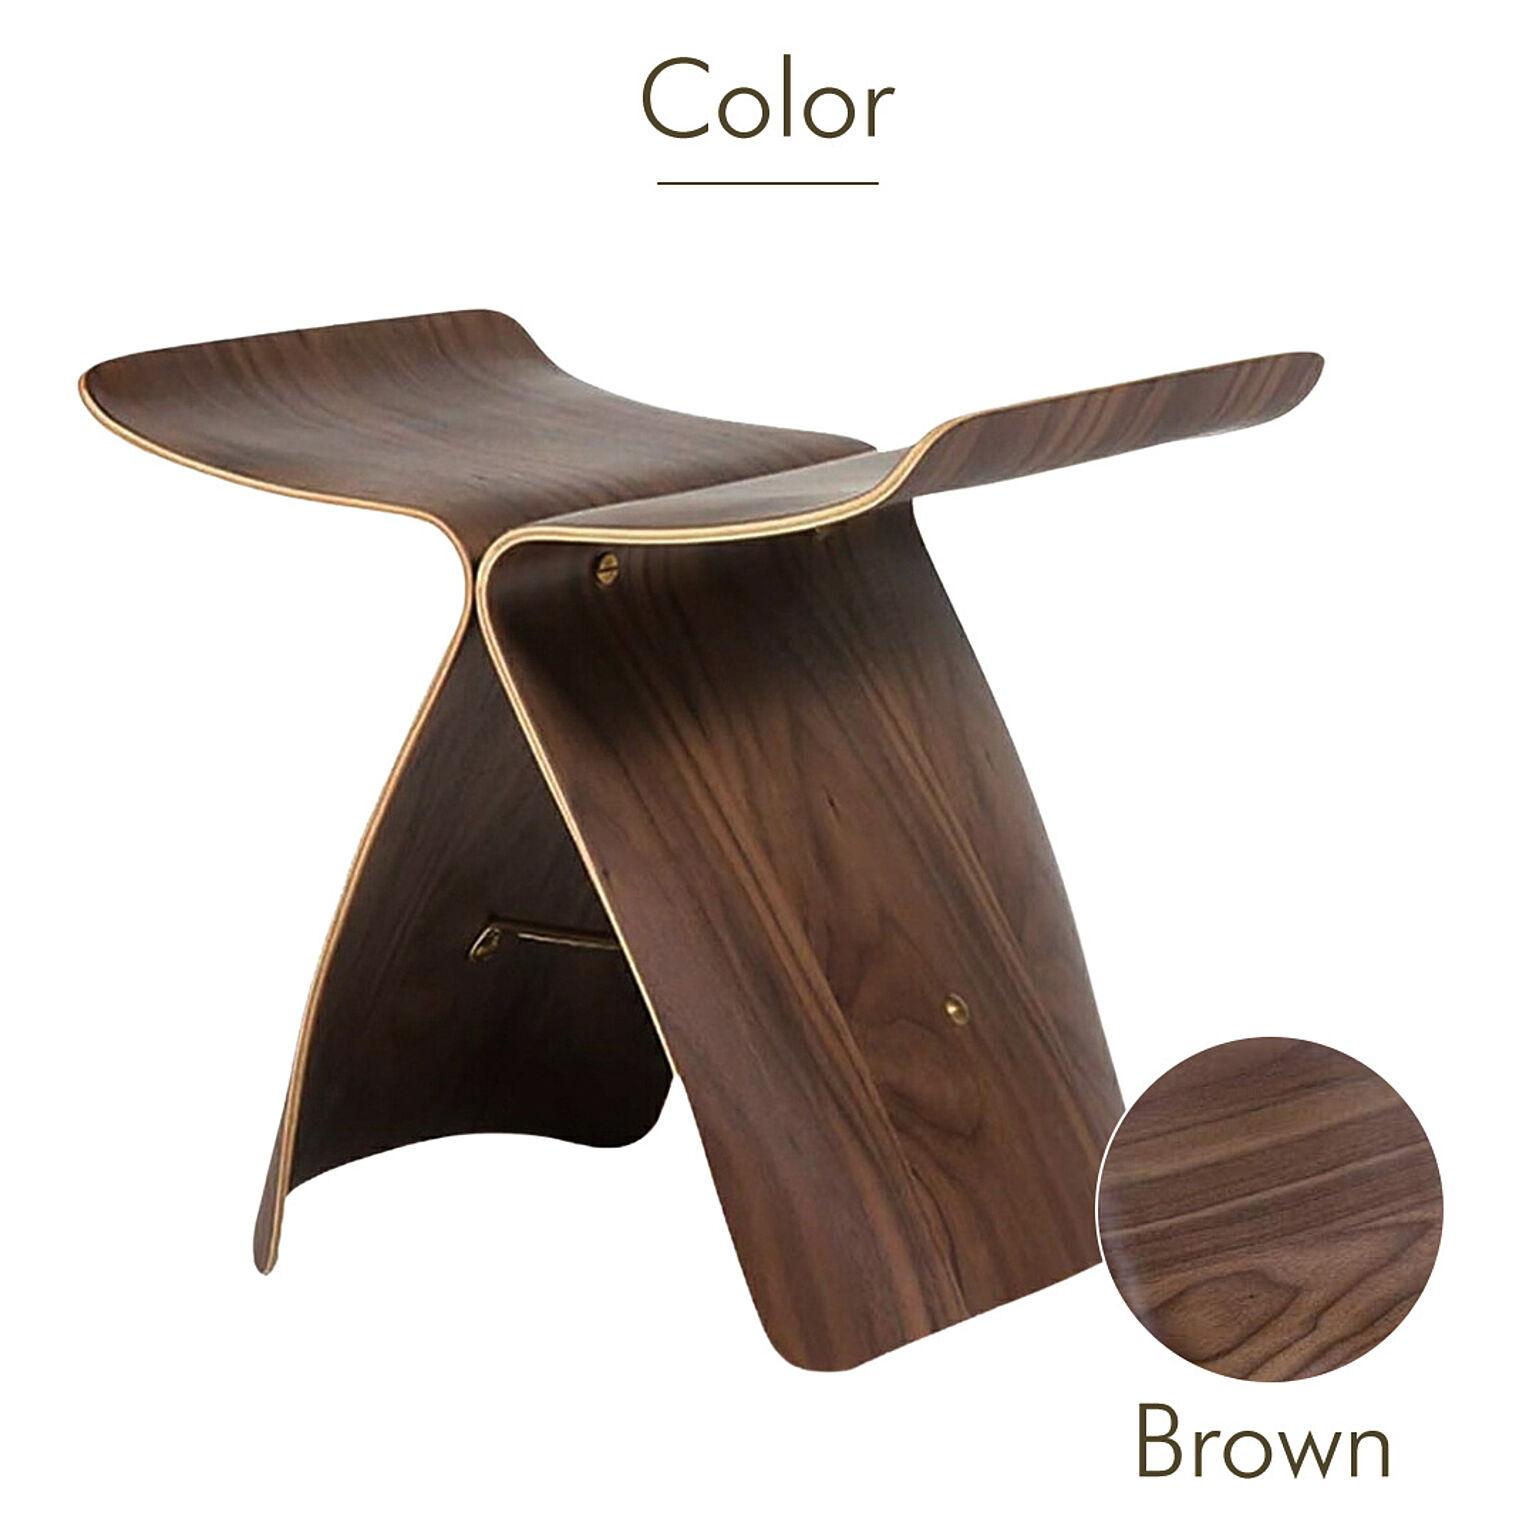 バタフライスツール ブラウン リプロダクト品 ウッドチェア 木製チェア 木製スツール 木製椅子 木製イス スツール 椅子 イス 家具 ウッド チェア